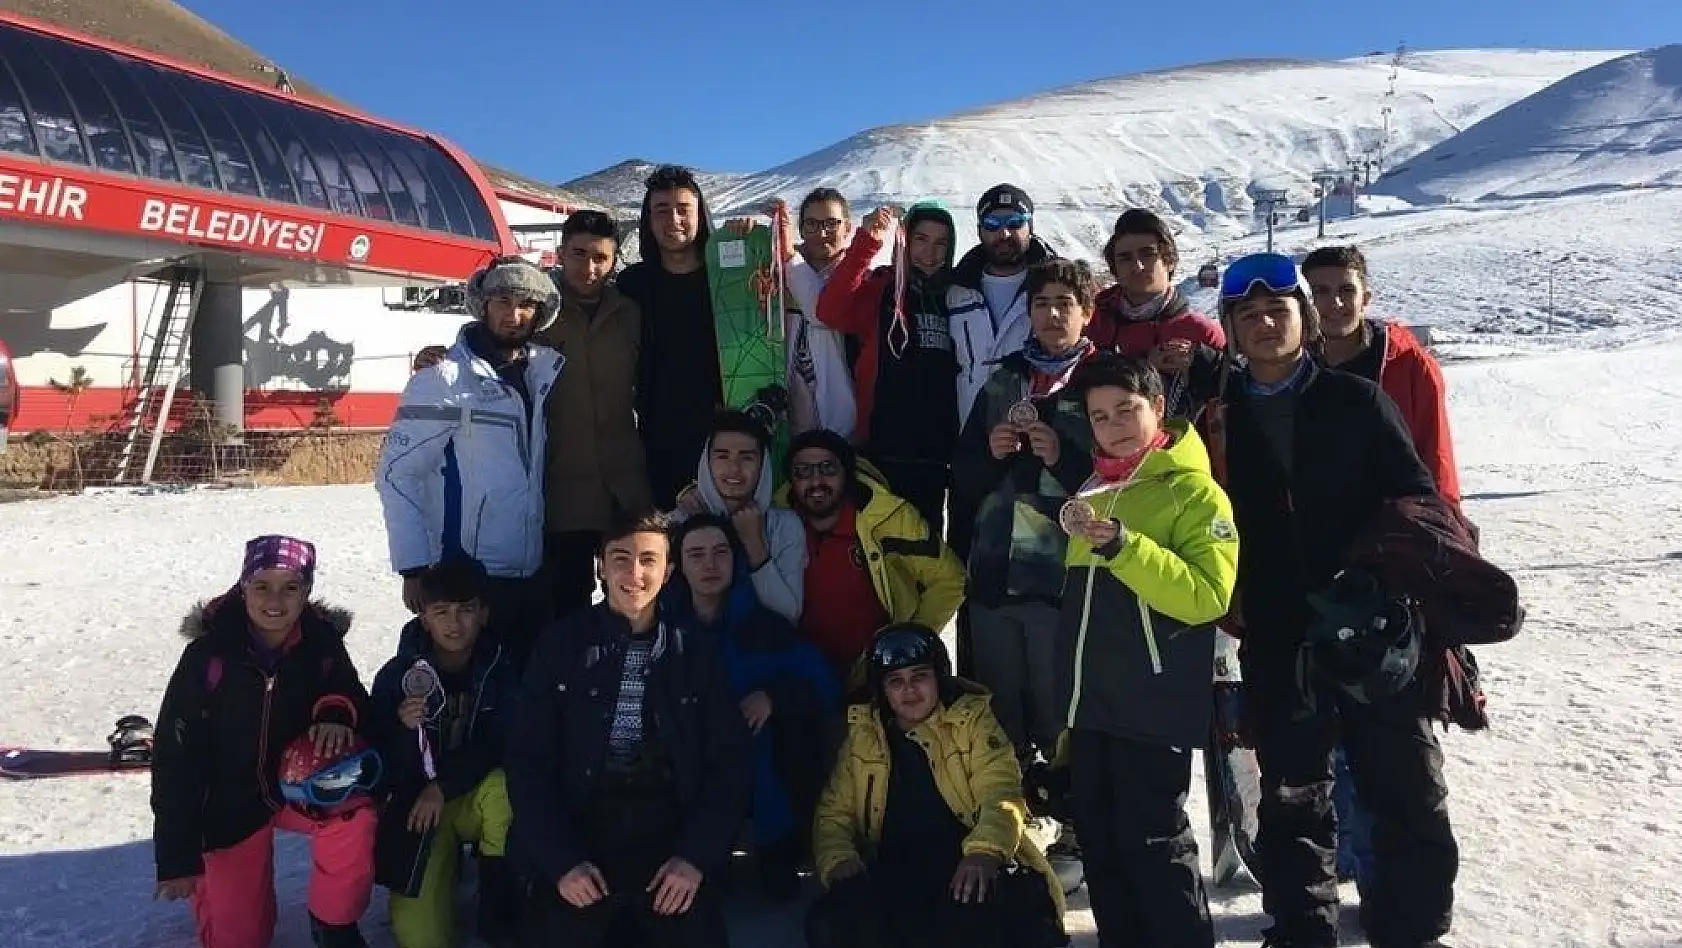 Develi Belediye Spor Kayak Kulübünden büyük başarı
